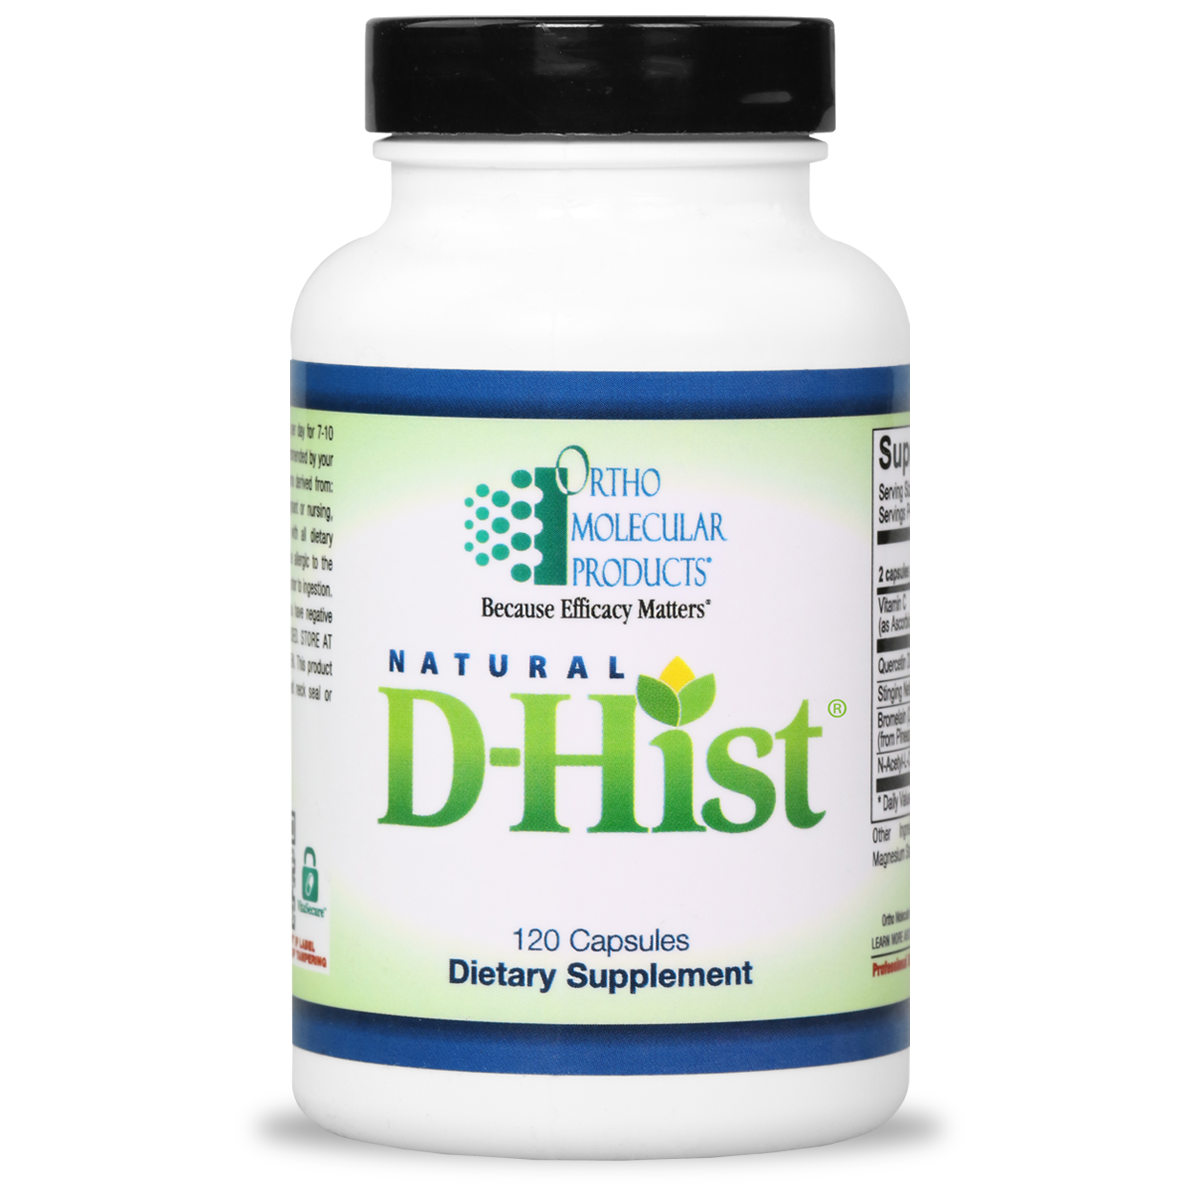 Natural D-Hist